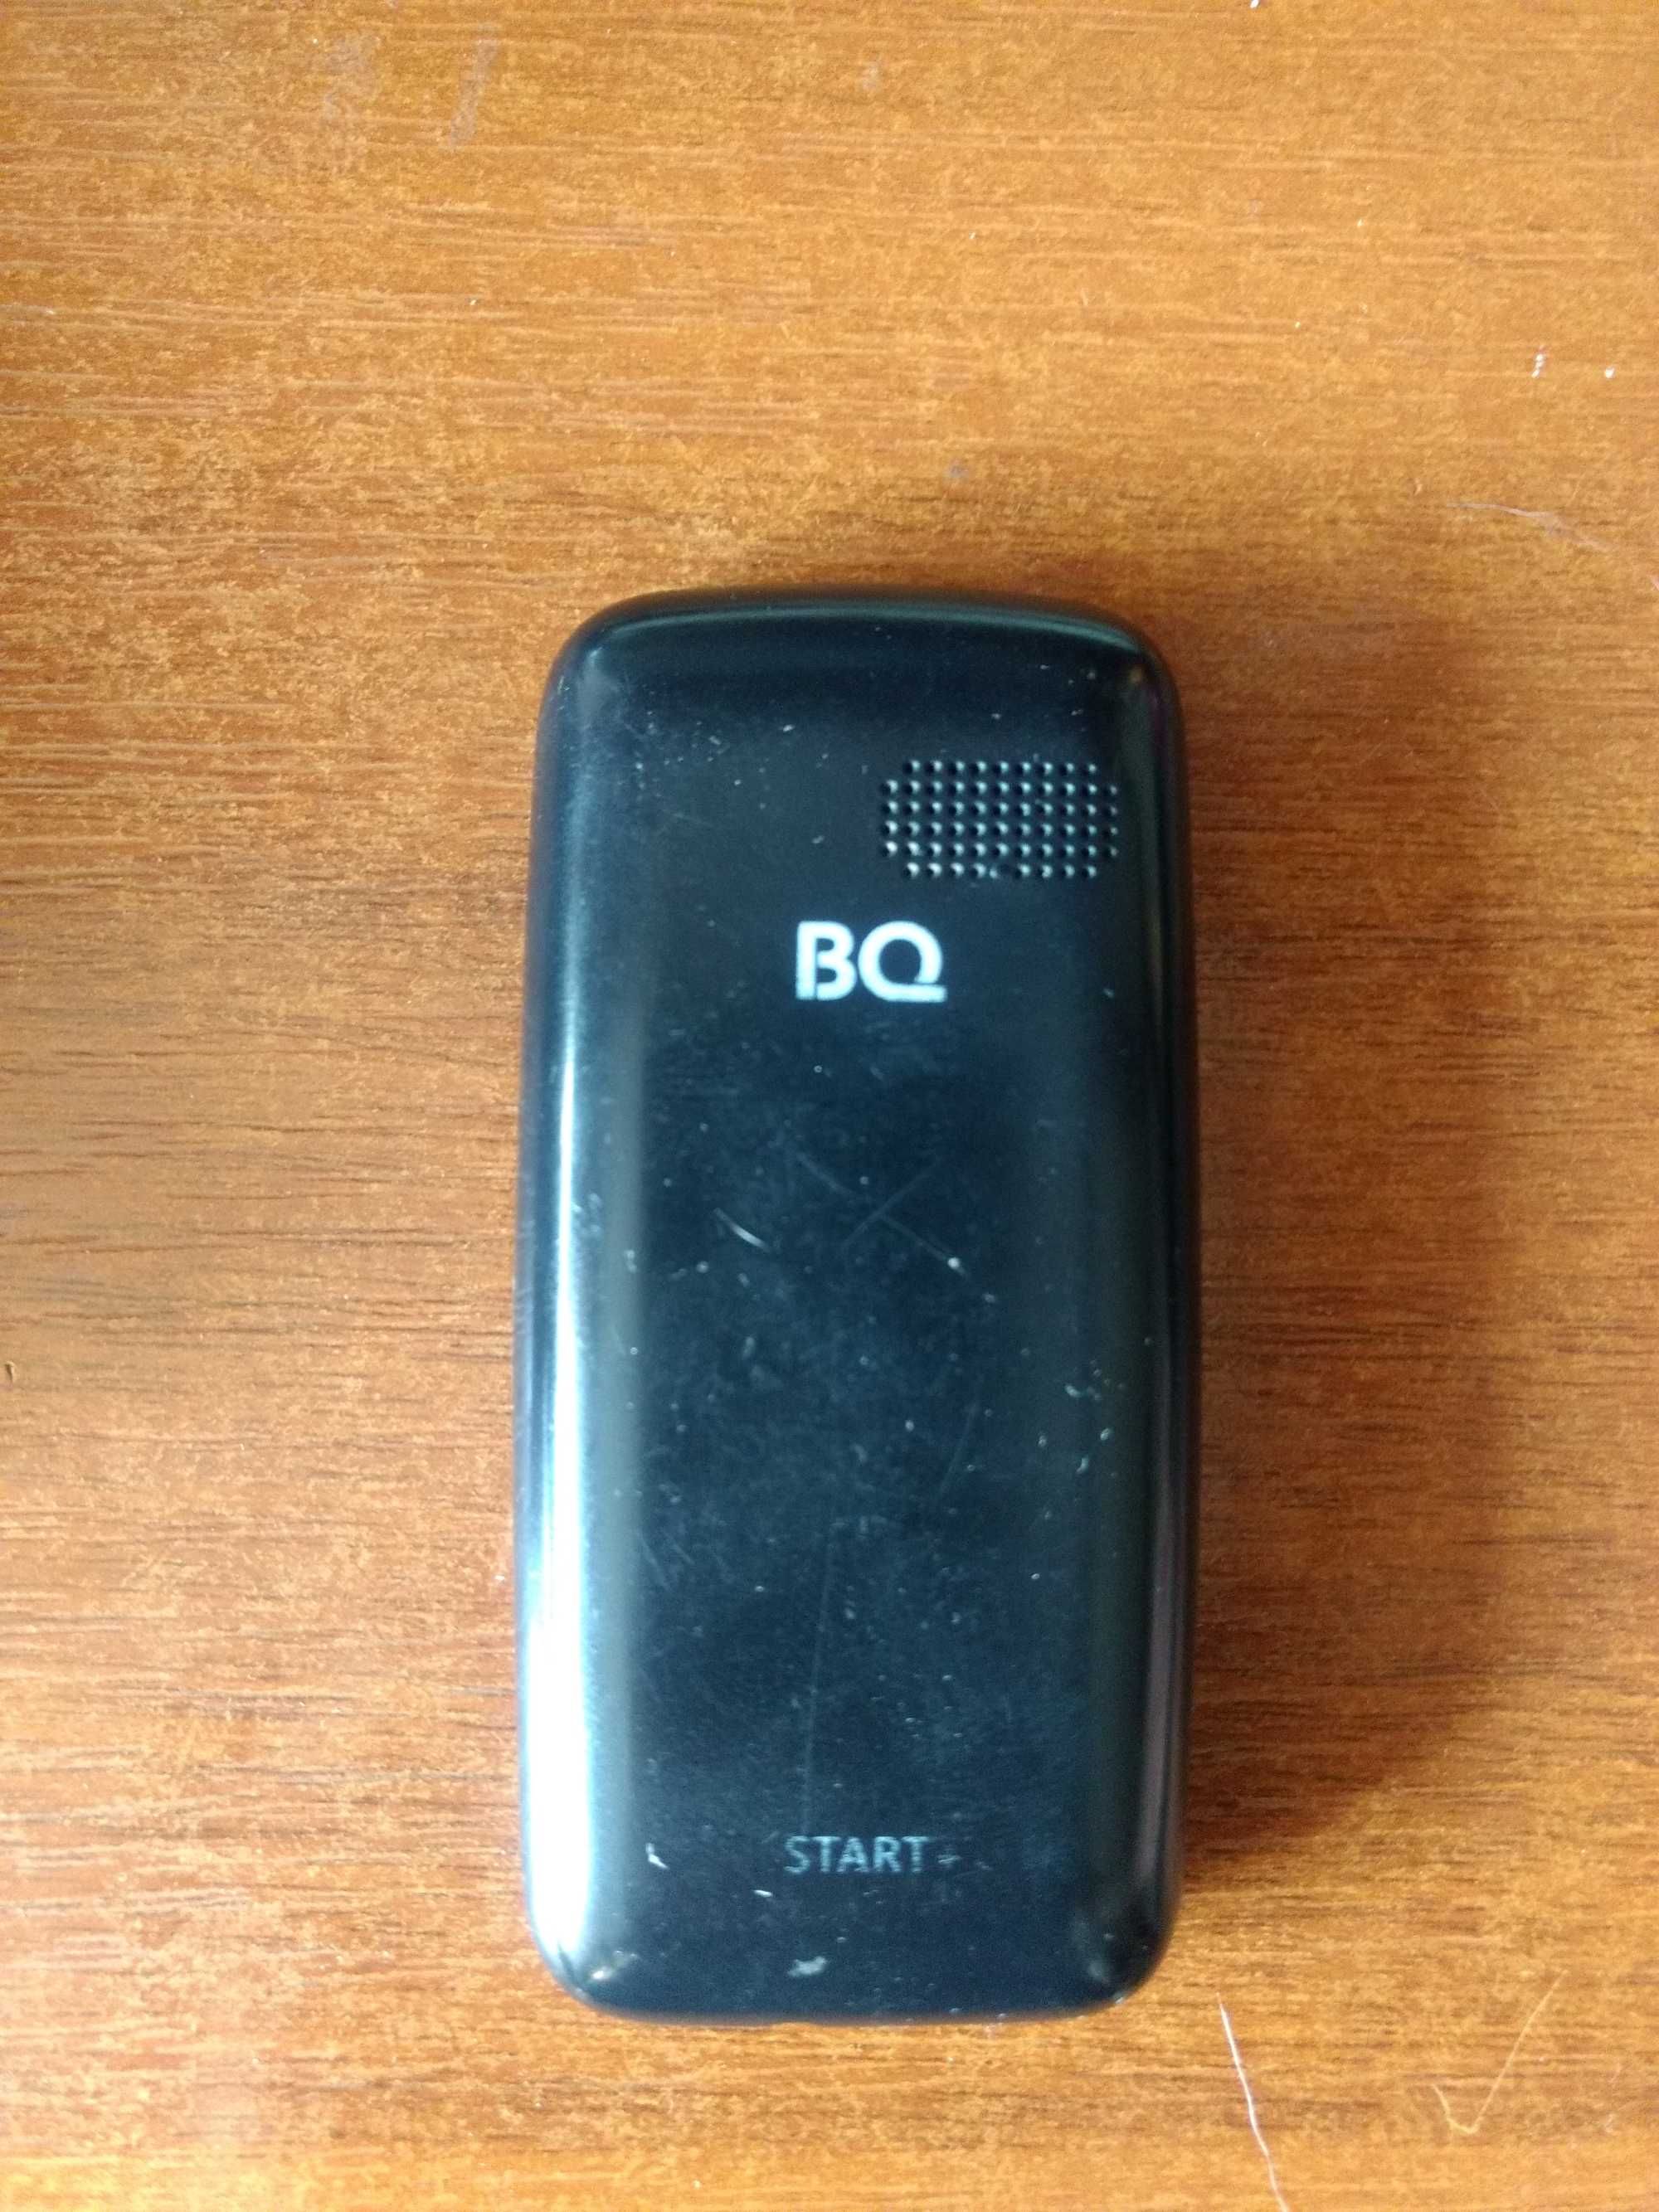 кнопочный BQ 1414 Start+, Nokia 105